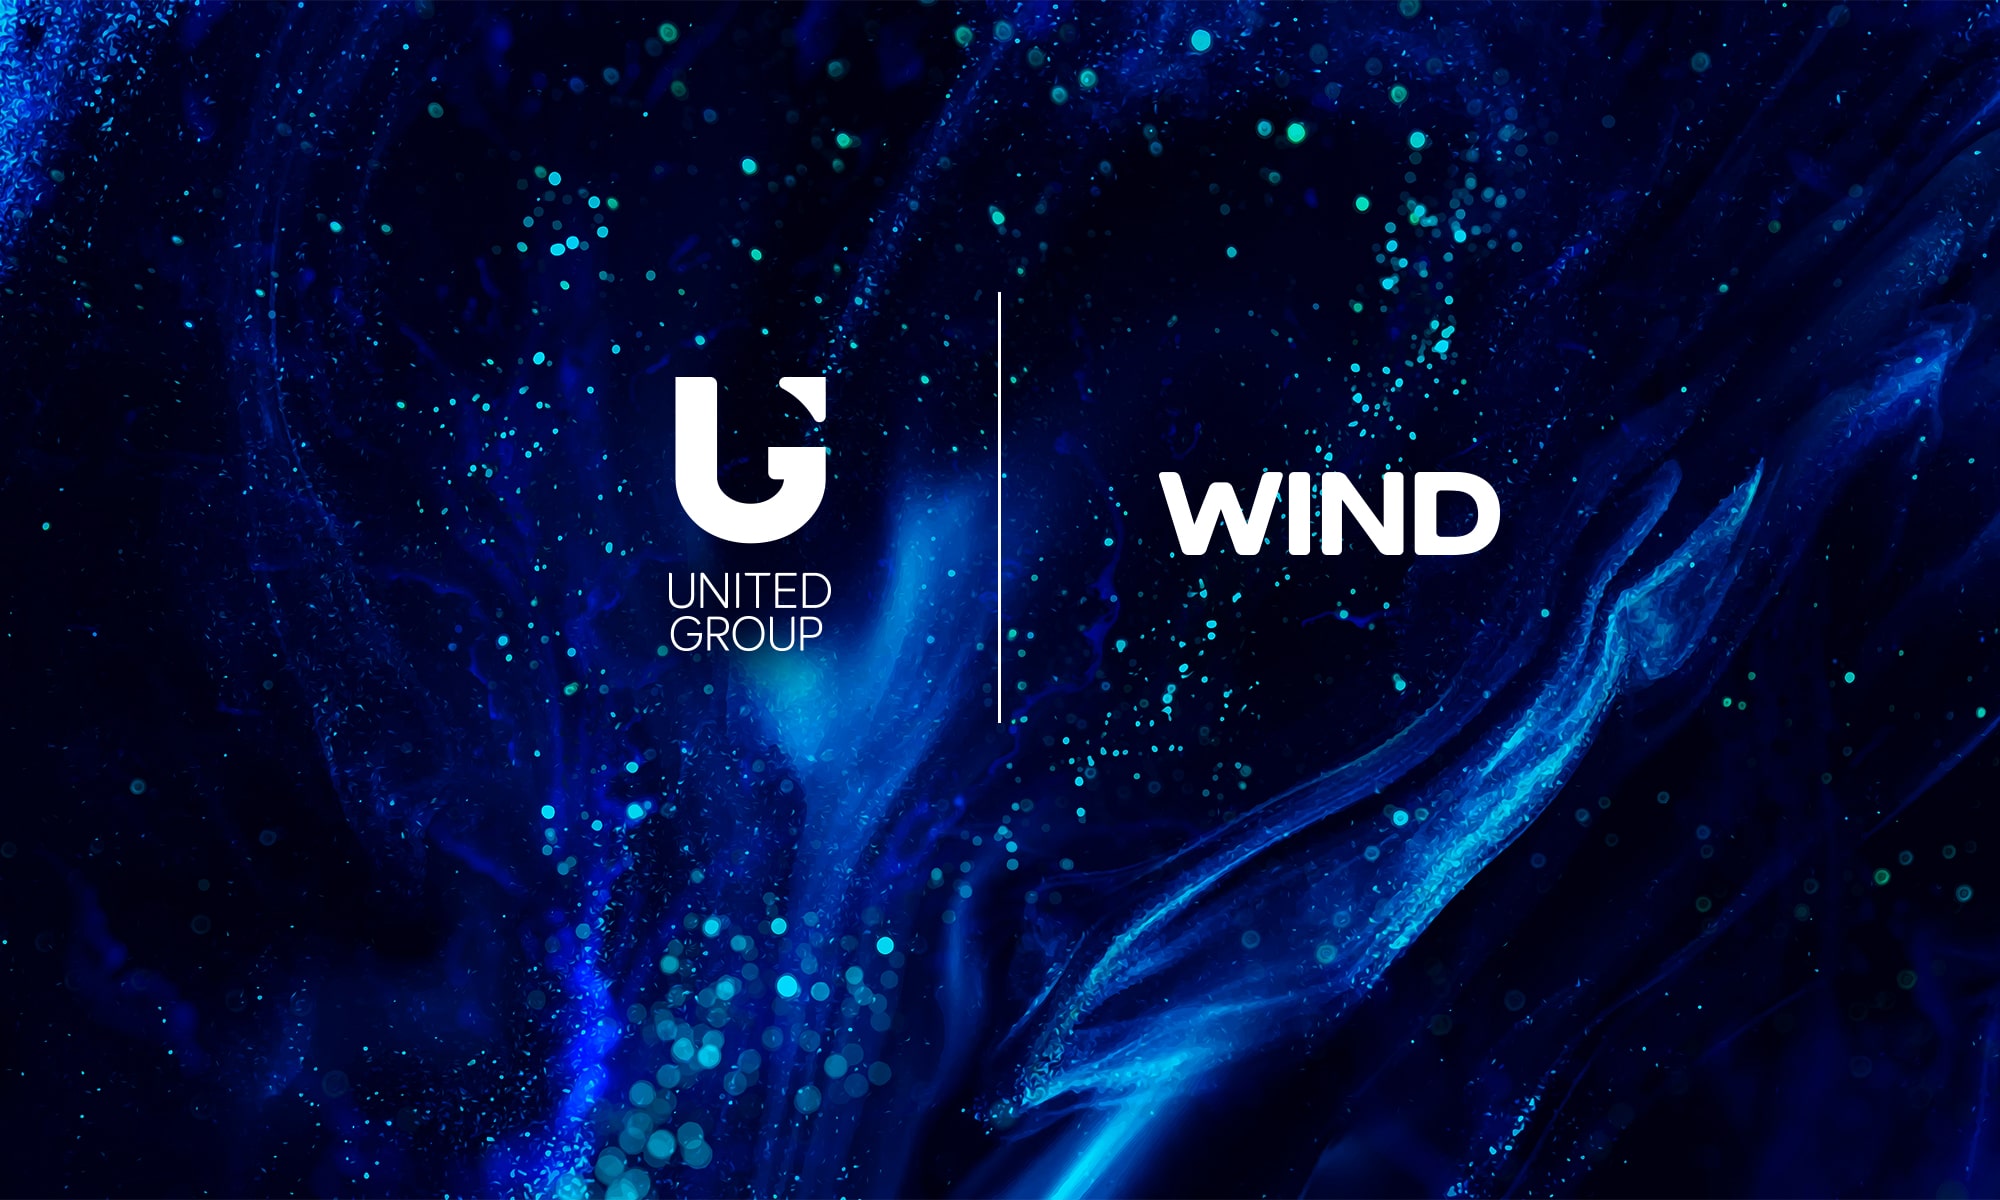 Evropska komisija odobrila akviziciju grčkog telekomunikacijskog operatera Wind United Grupi